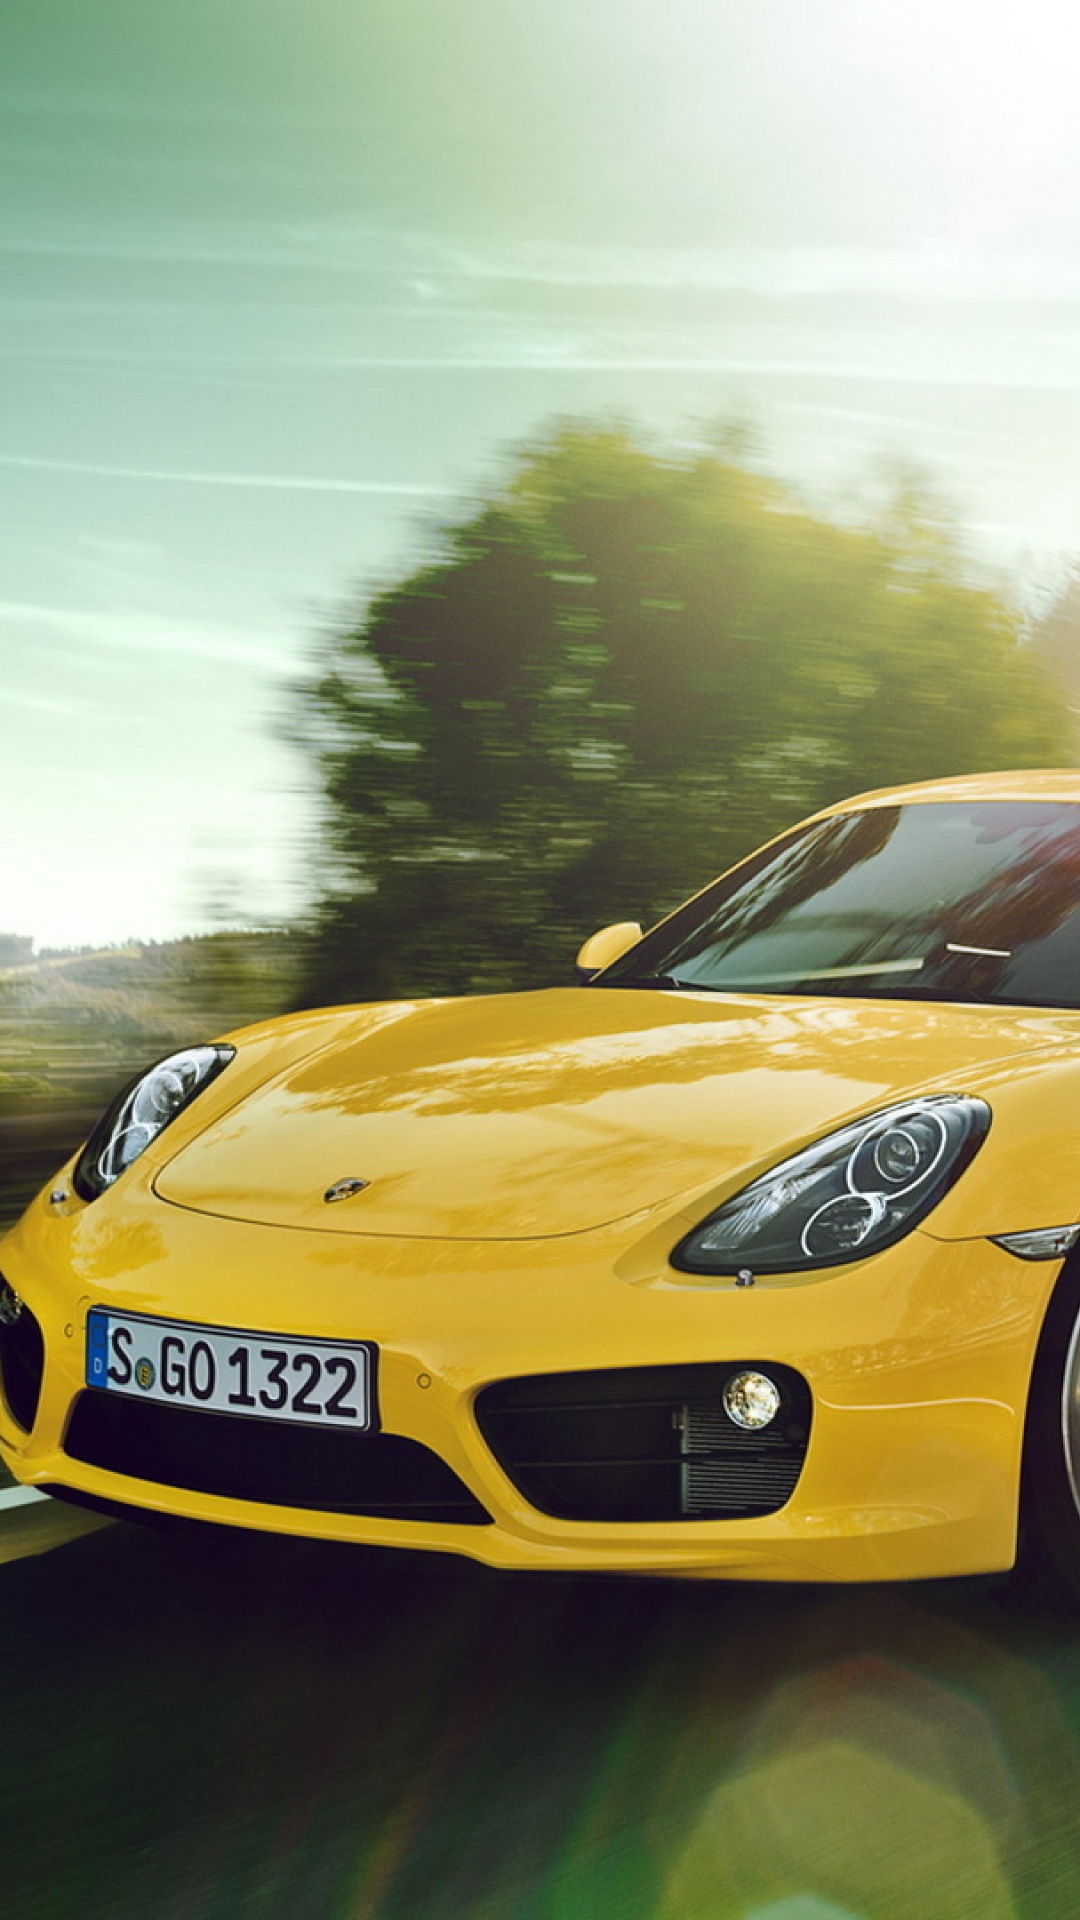 Gelber Porsche 911 Tagsüber Unterwegs. Wallpaper in 1080x1920 Resolution